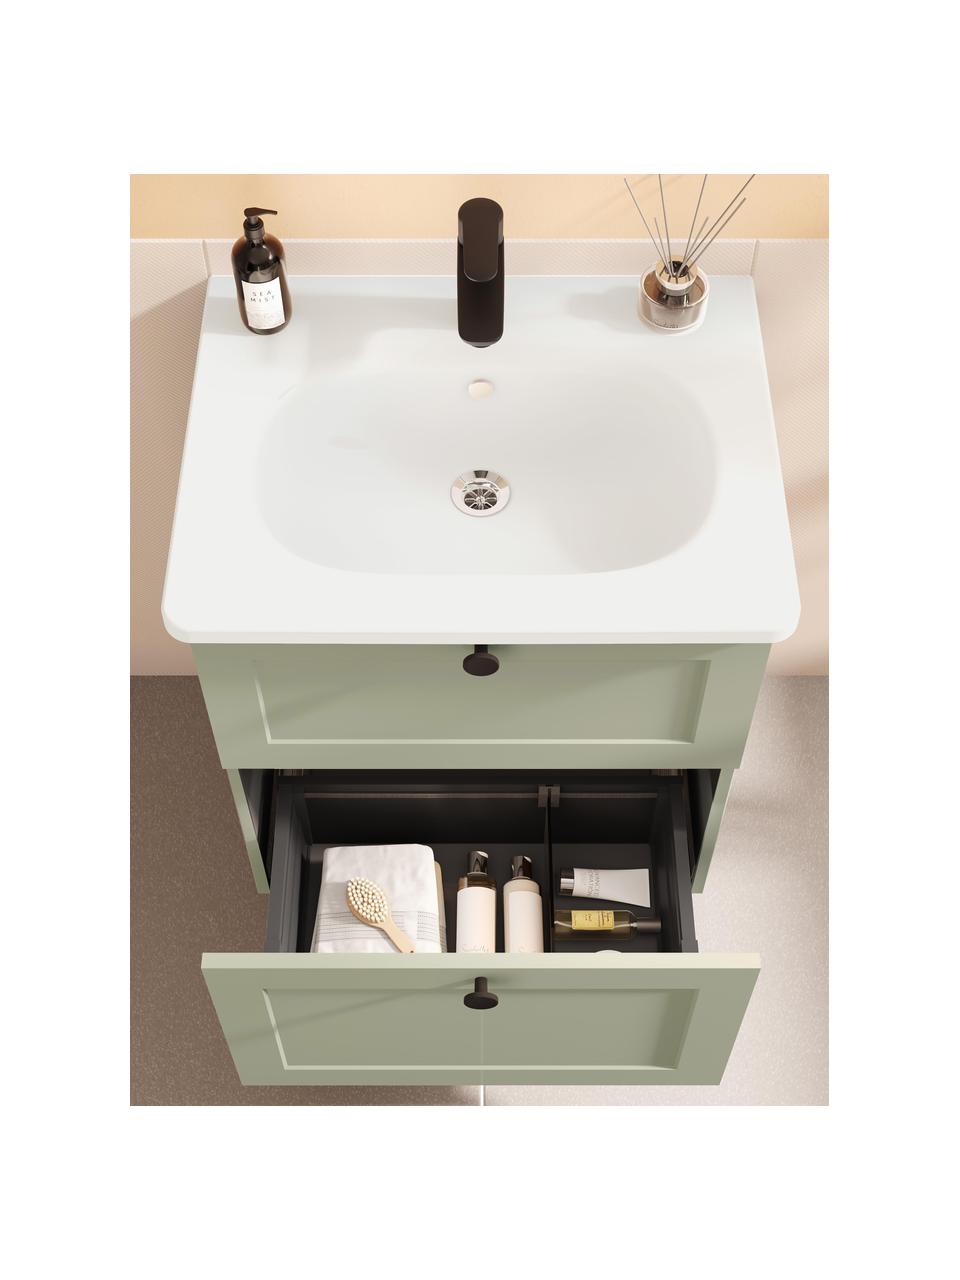 Szafka łazienkowa z umywalką Rafaella, Szałwiowy zielony, S 60 x W 67 cm